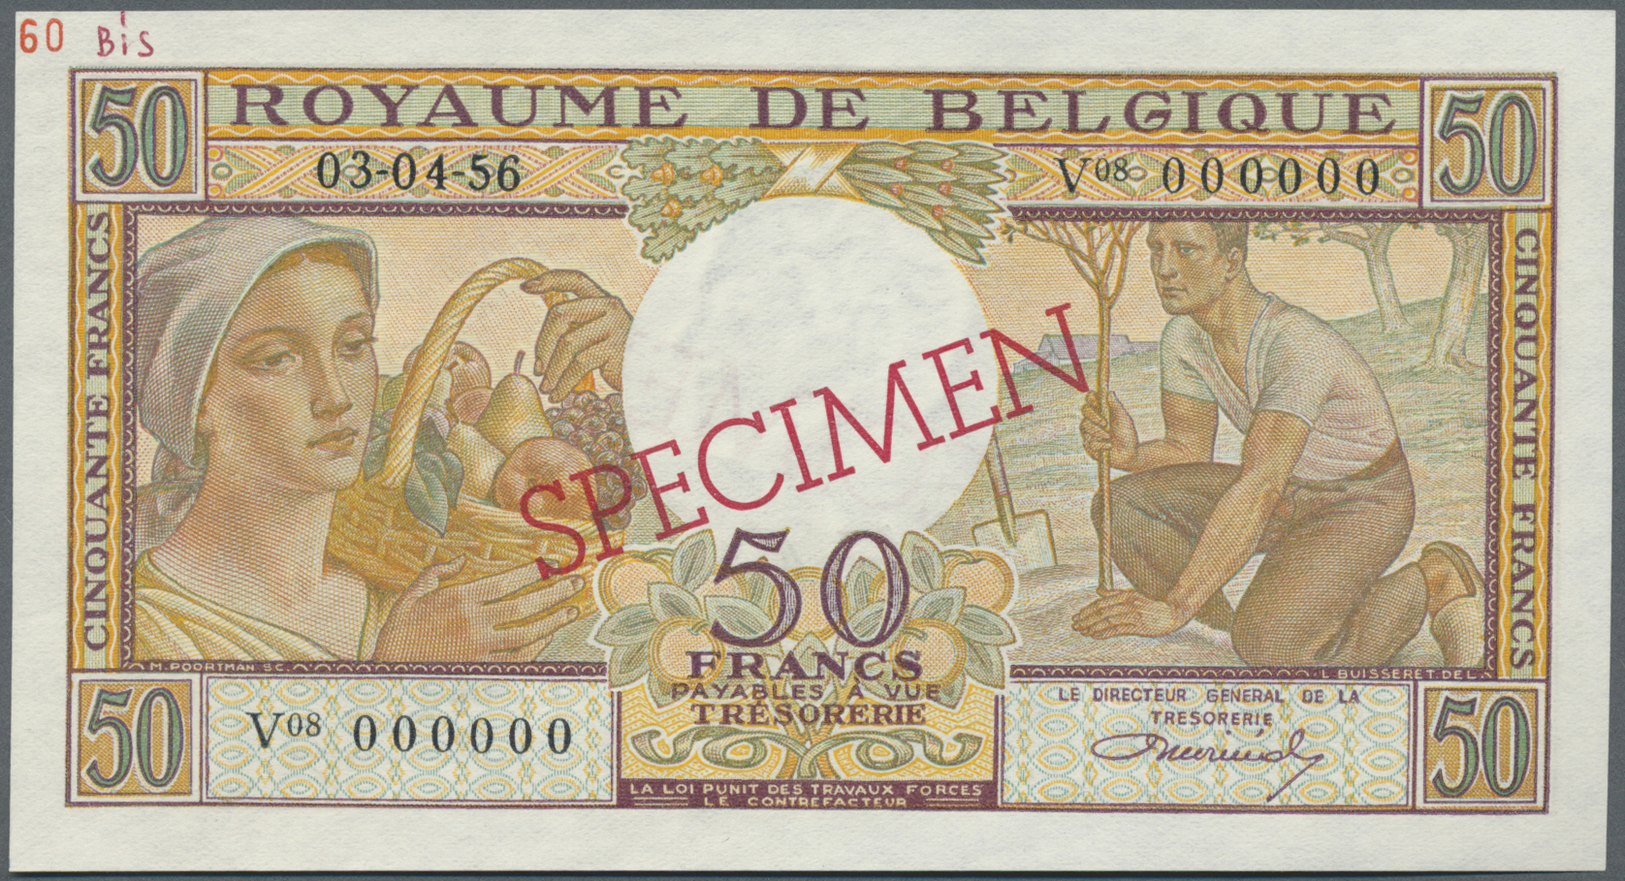 00286 Belgium / Belgien: 50 Francs 1956 Specimen P. 133Bs, Zero Serial Numbers, Red Specimen Overprint, Light Dints In P - [ 1] …-1830 : Before Independence